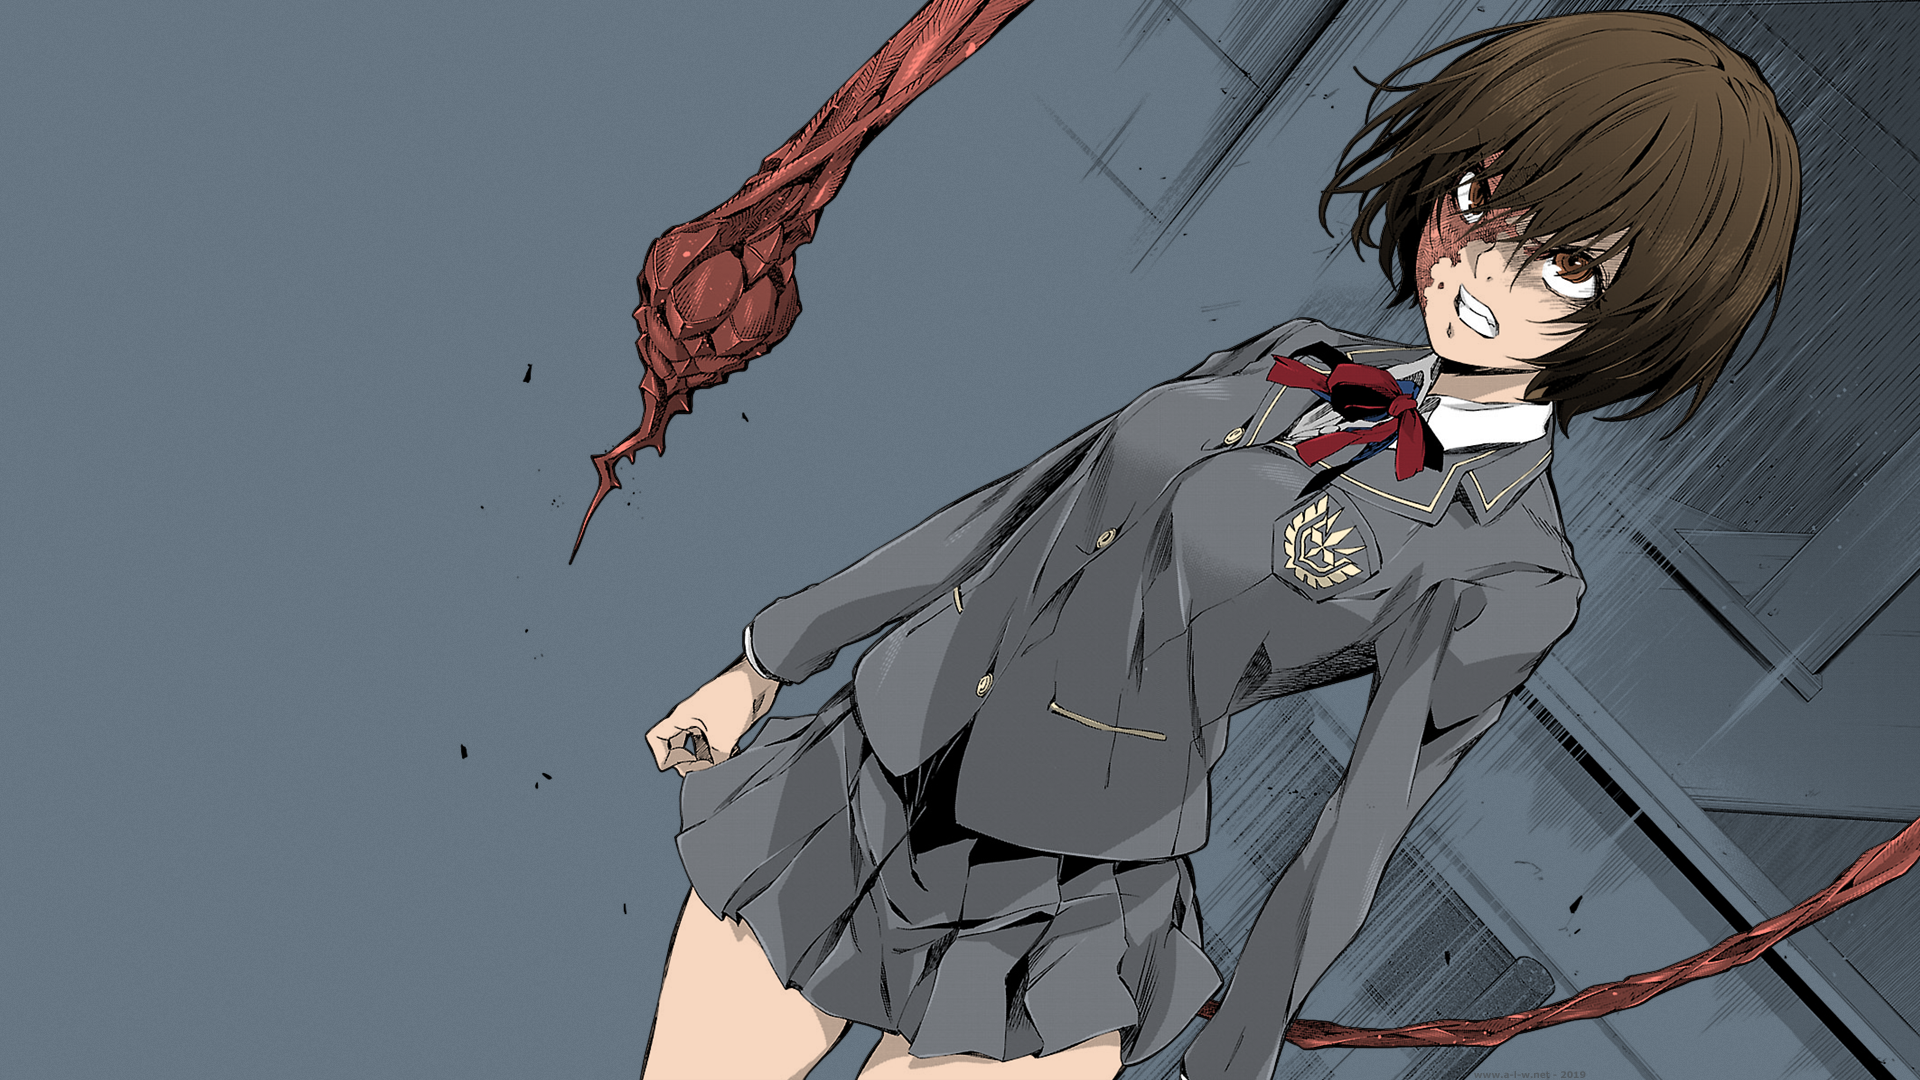 Schoolgirl School Uniform Short Skirt Short Hair Brown Eyes Monster Girl Wasps Anime Manga Anime Gir 1920x1080